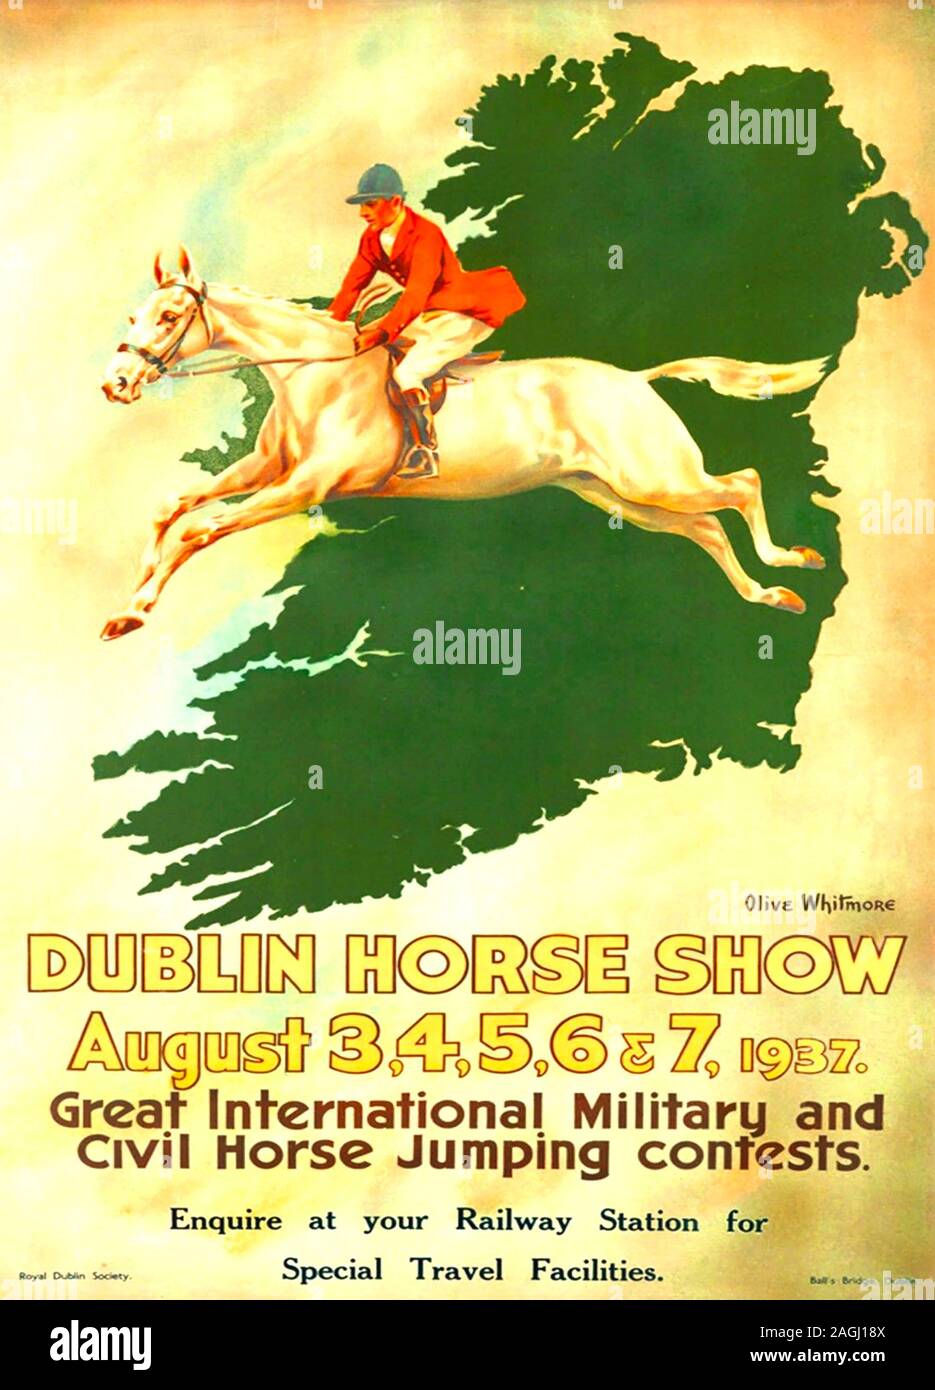 DUBLIN HORSE SHOW POSTER 1937 Banque D'Images